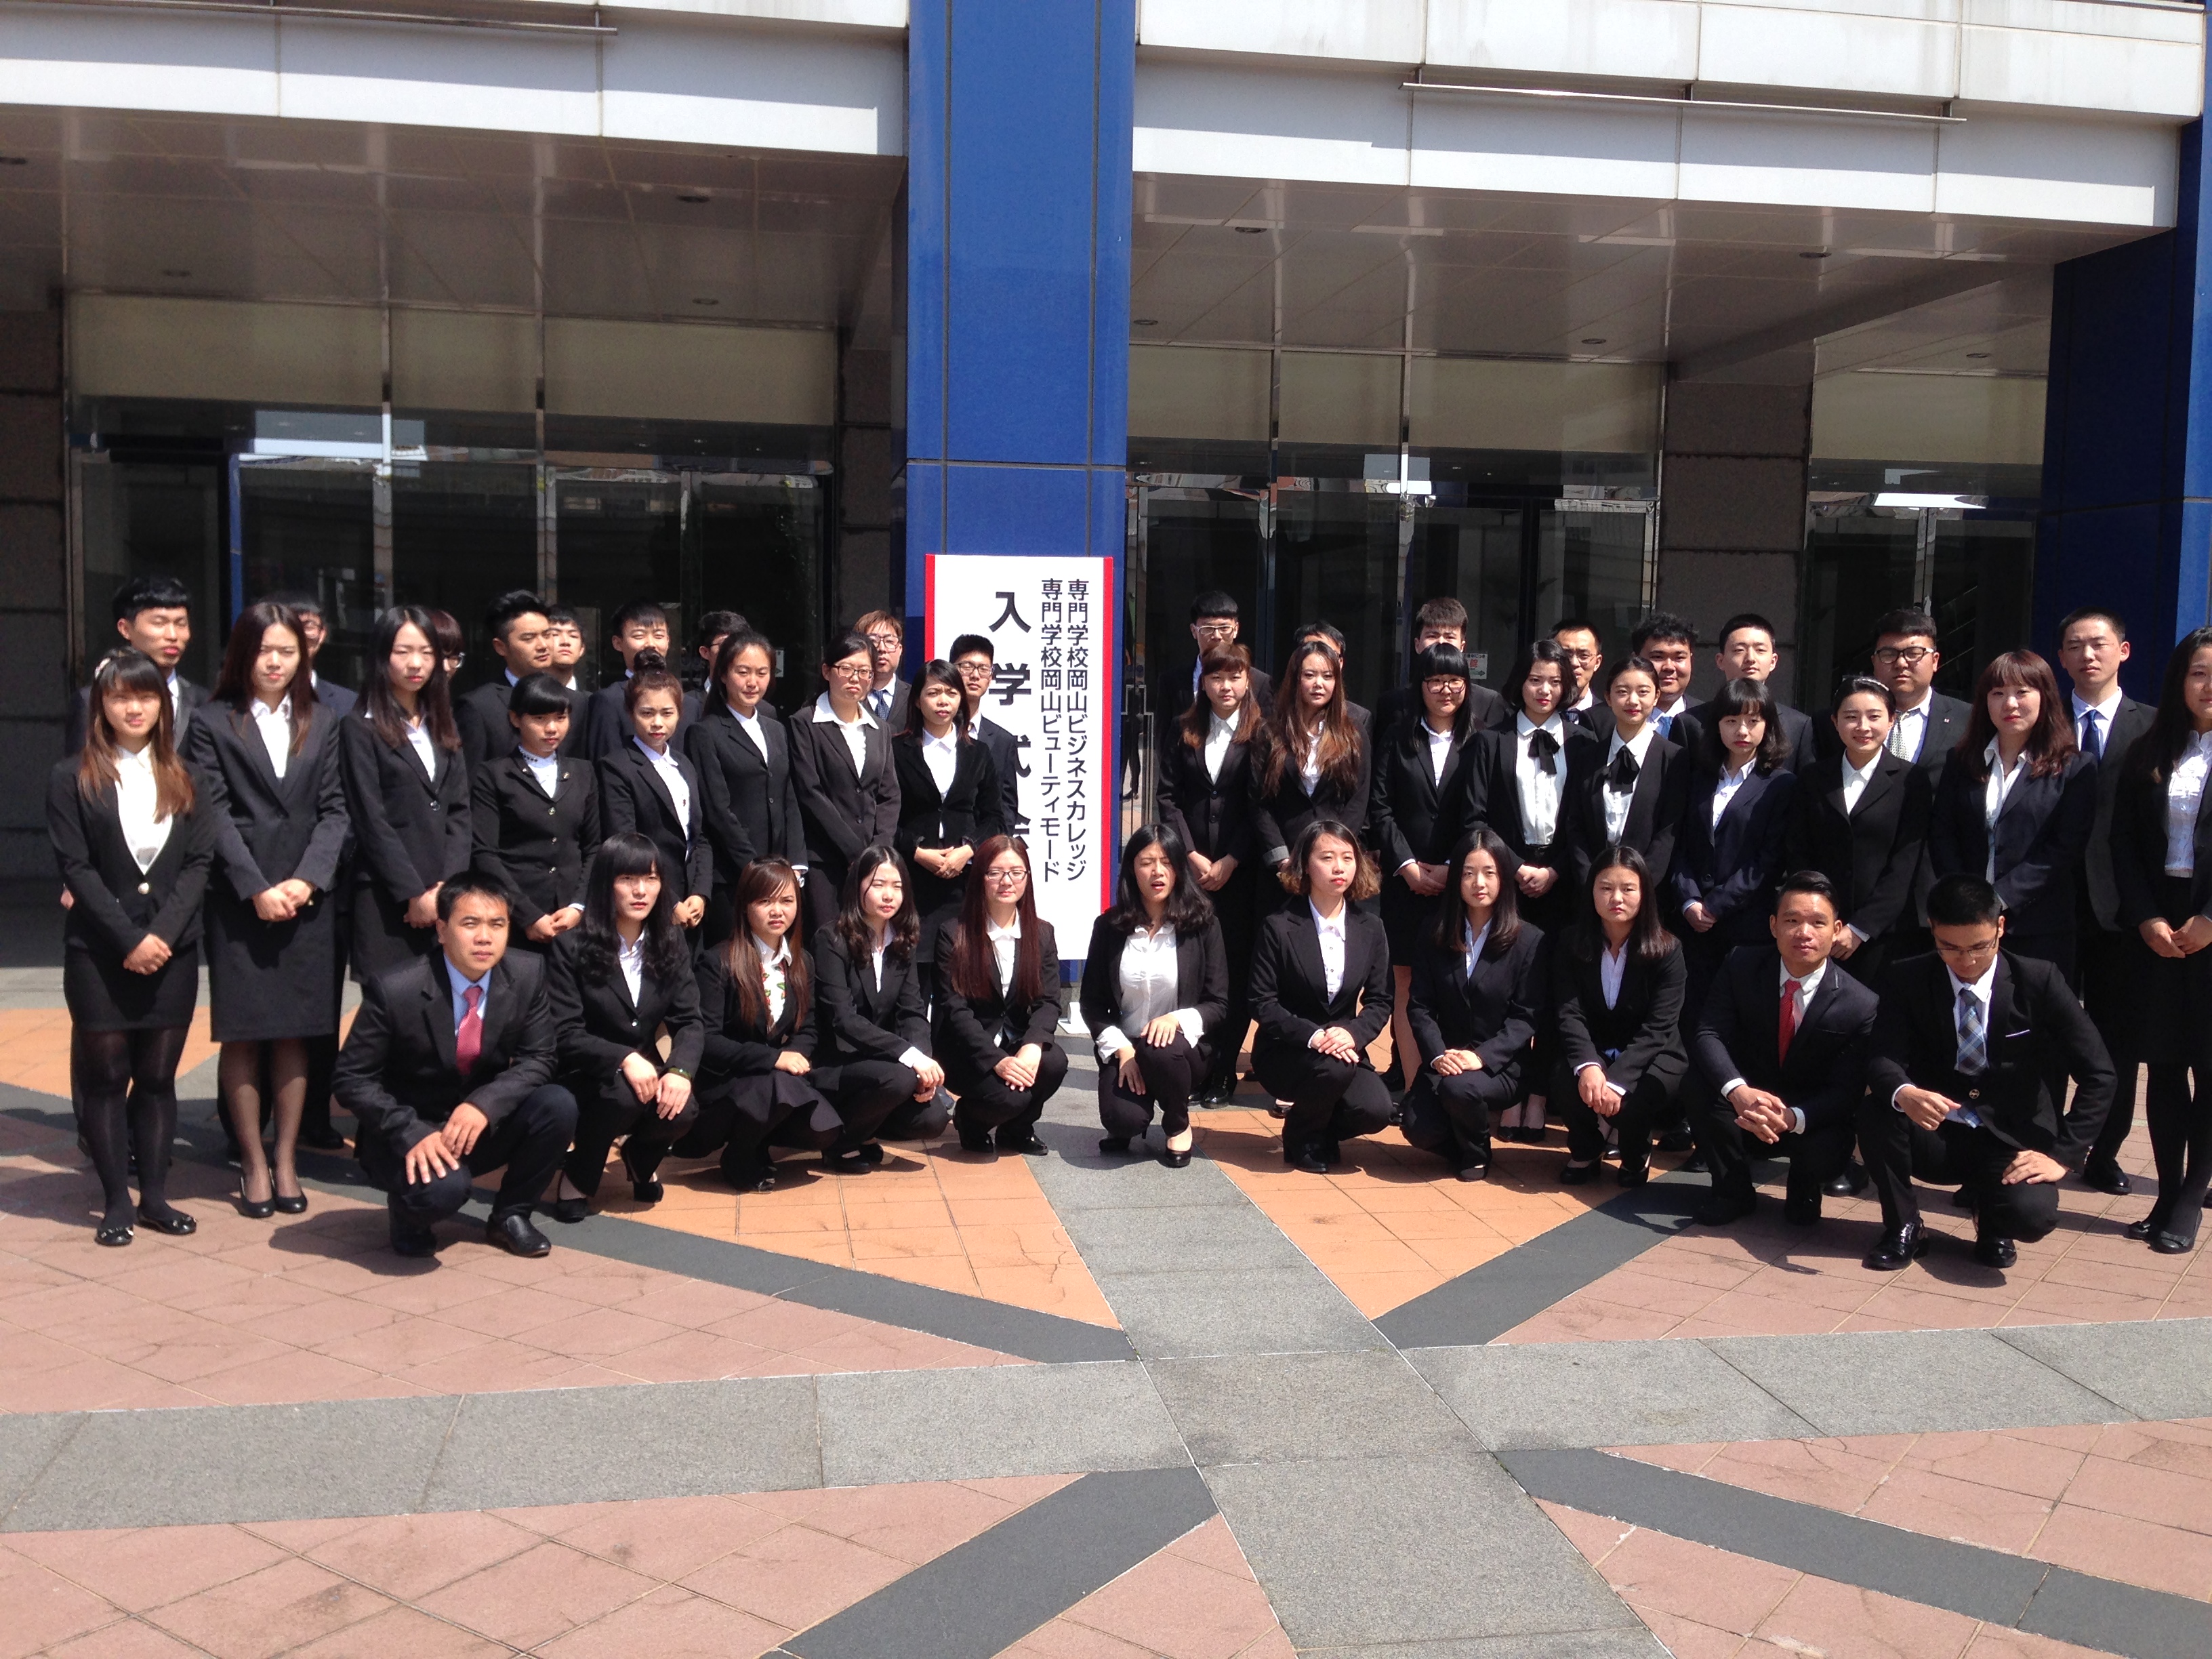 buổi lễ khai giảng đầu năm học ở Nhật Bản